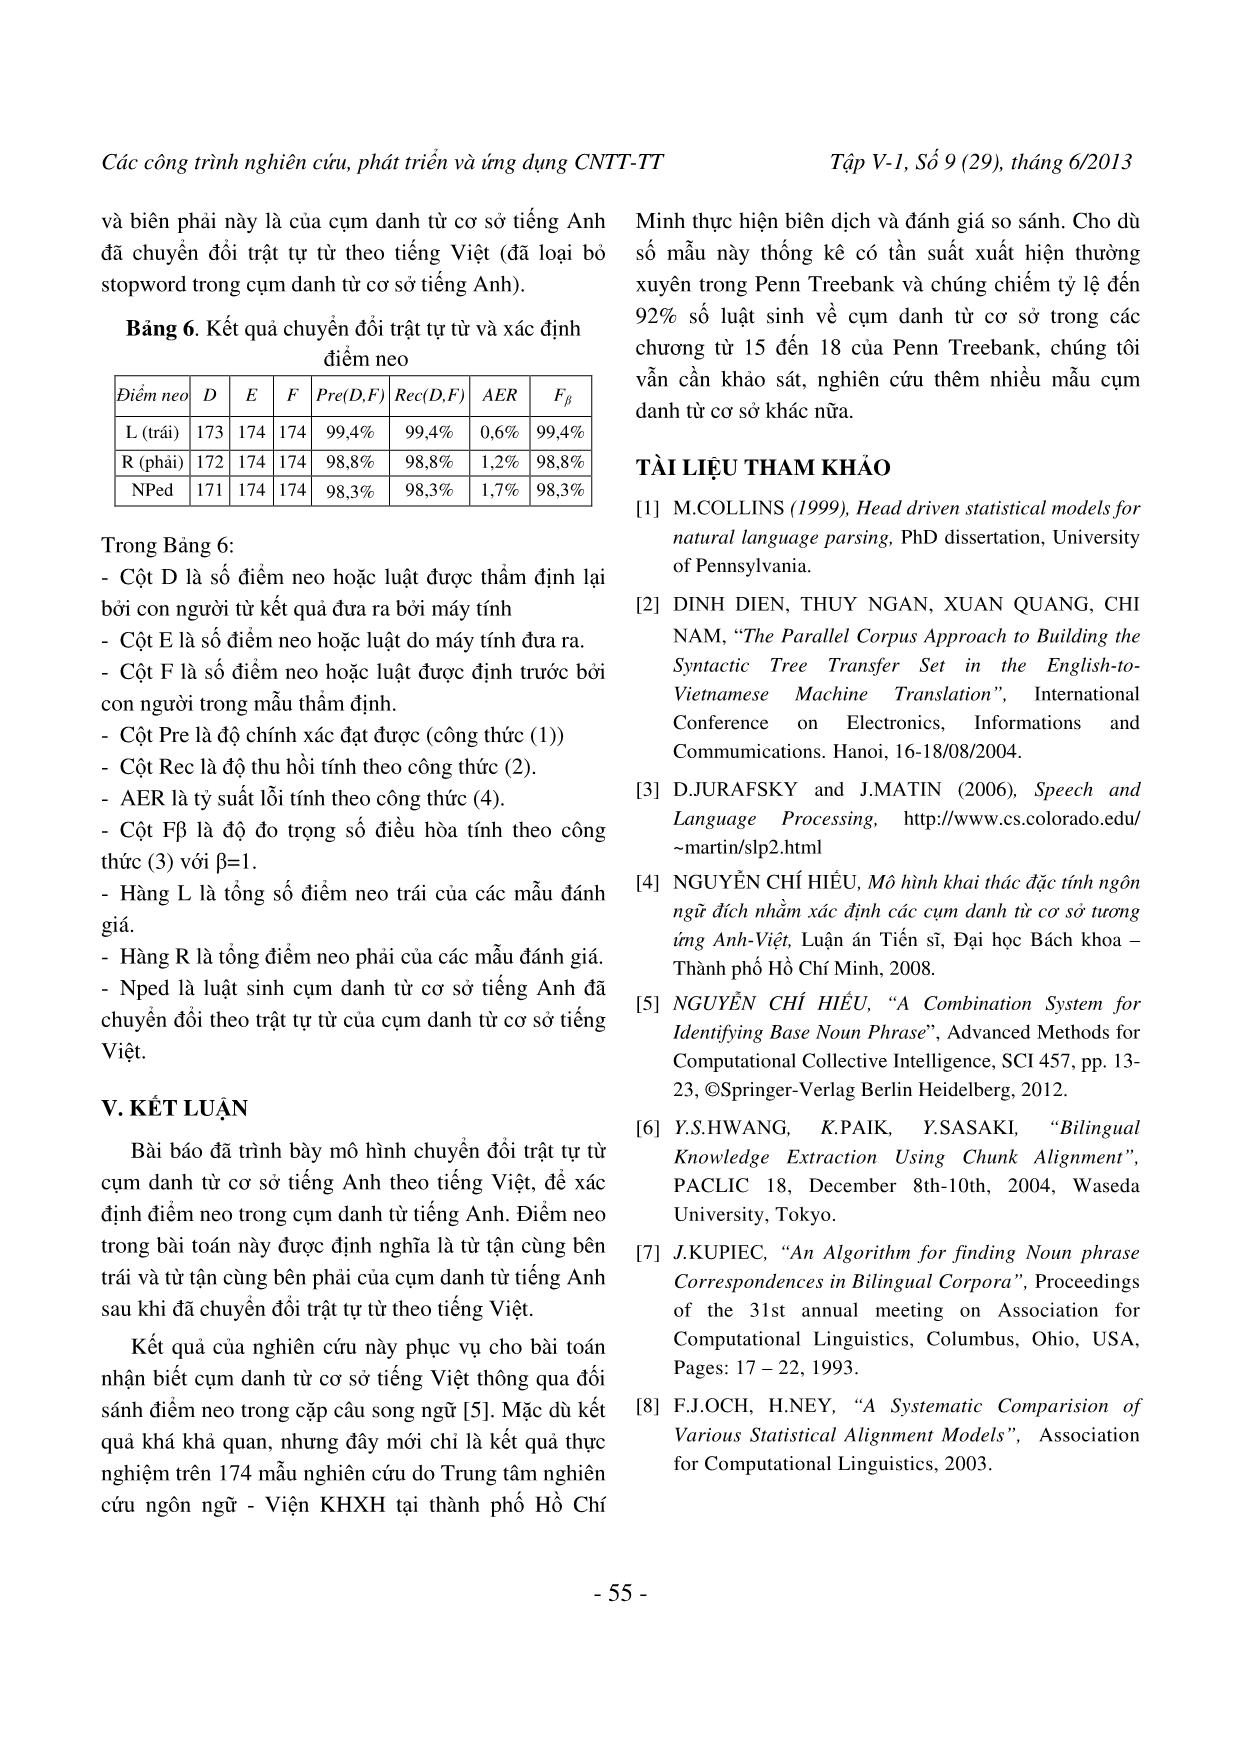 Chuyển đổi cây cú pháp cụm danh từ tiếng Anh theo tiếng Việt trang 8